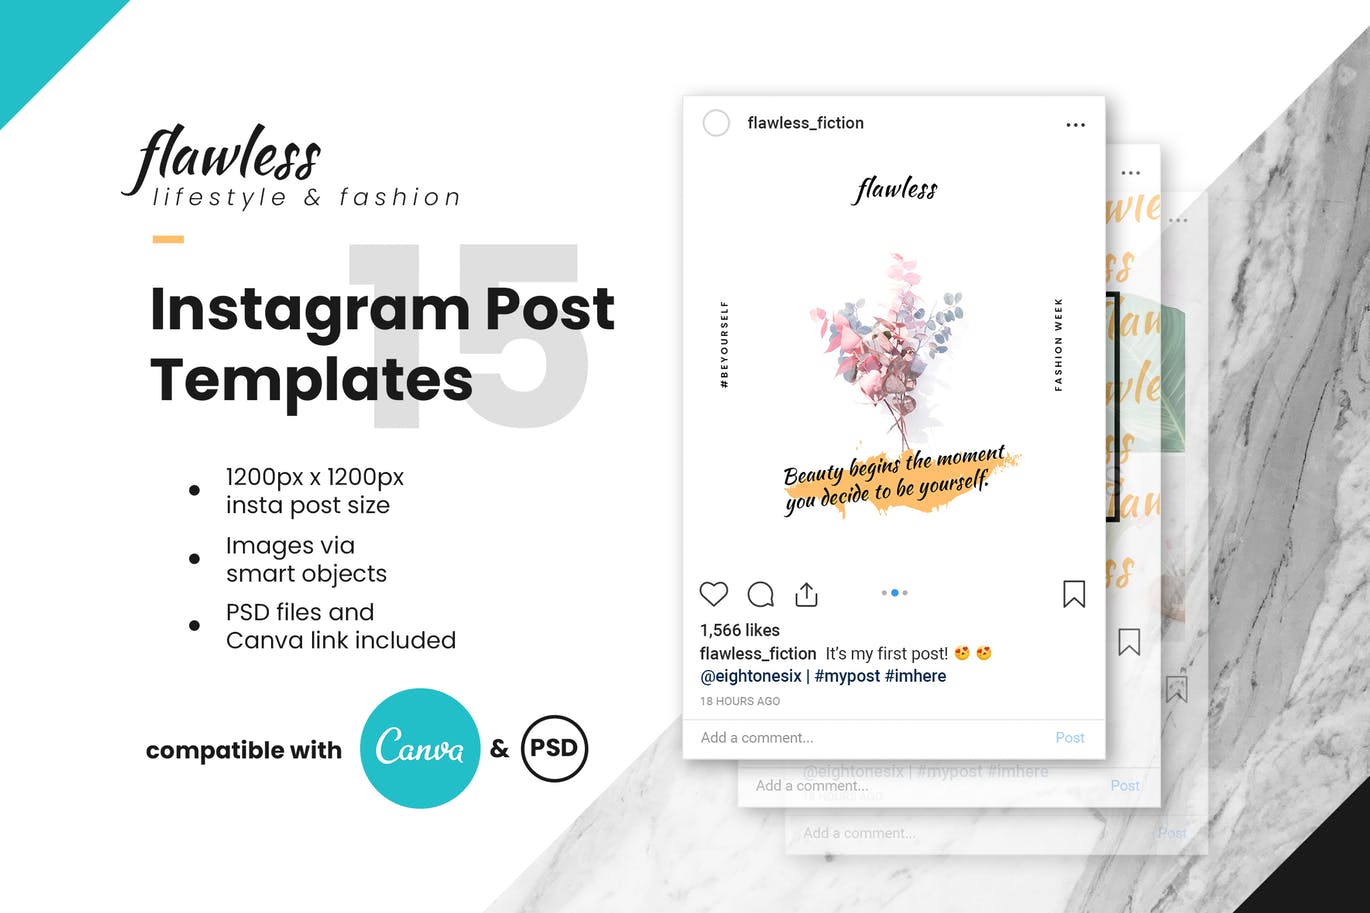 优雅时尚设计风格Instagram品牌故事设计模板素材库精选 Flawless Instagram Post Template插图